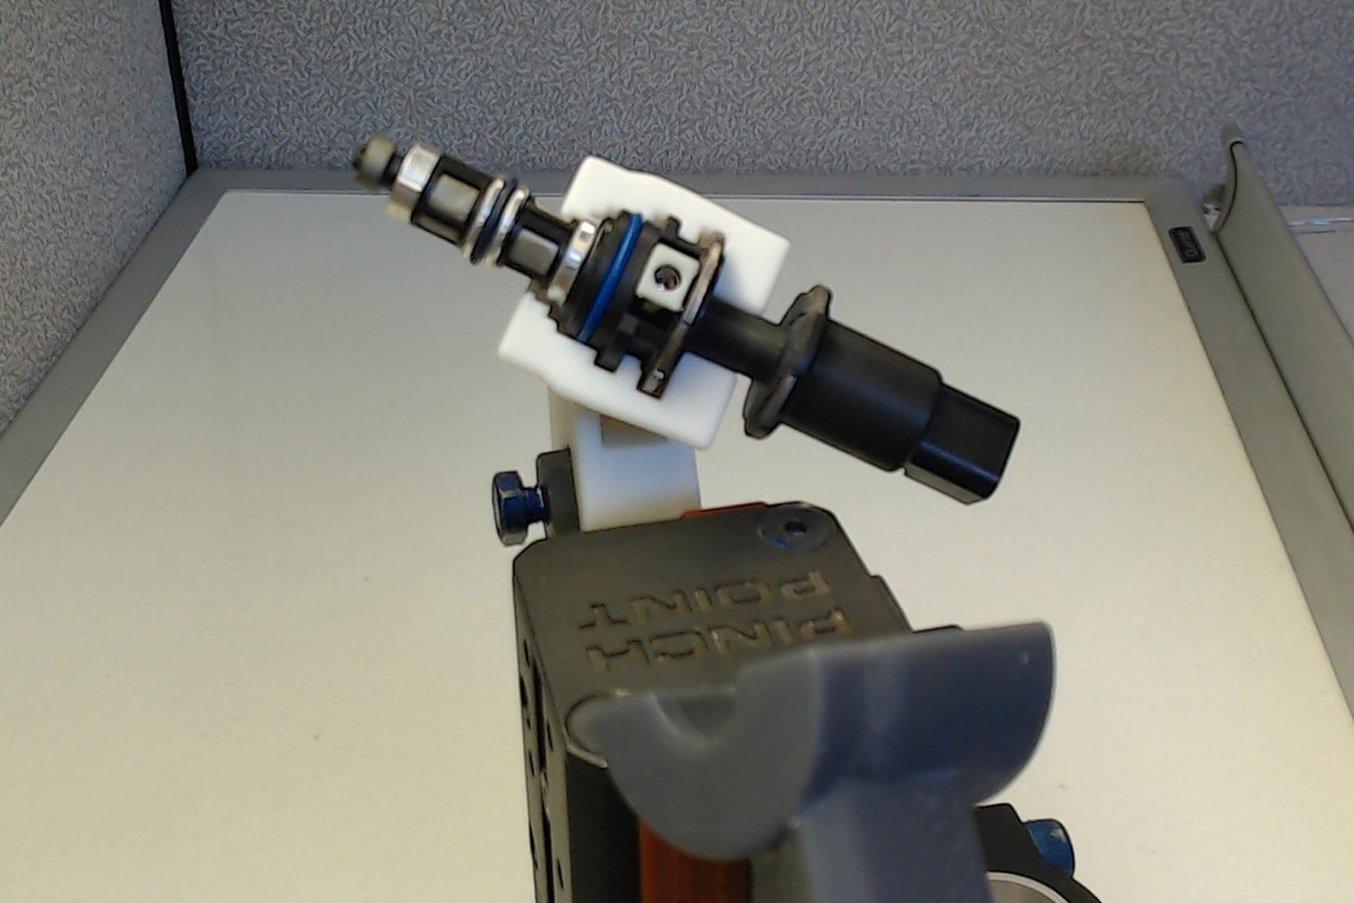 Das Team der STS Technical Group nutzte SLA-3D-Druck, um die maßgefertigten Roboter-Greifer herzustellen.